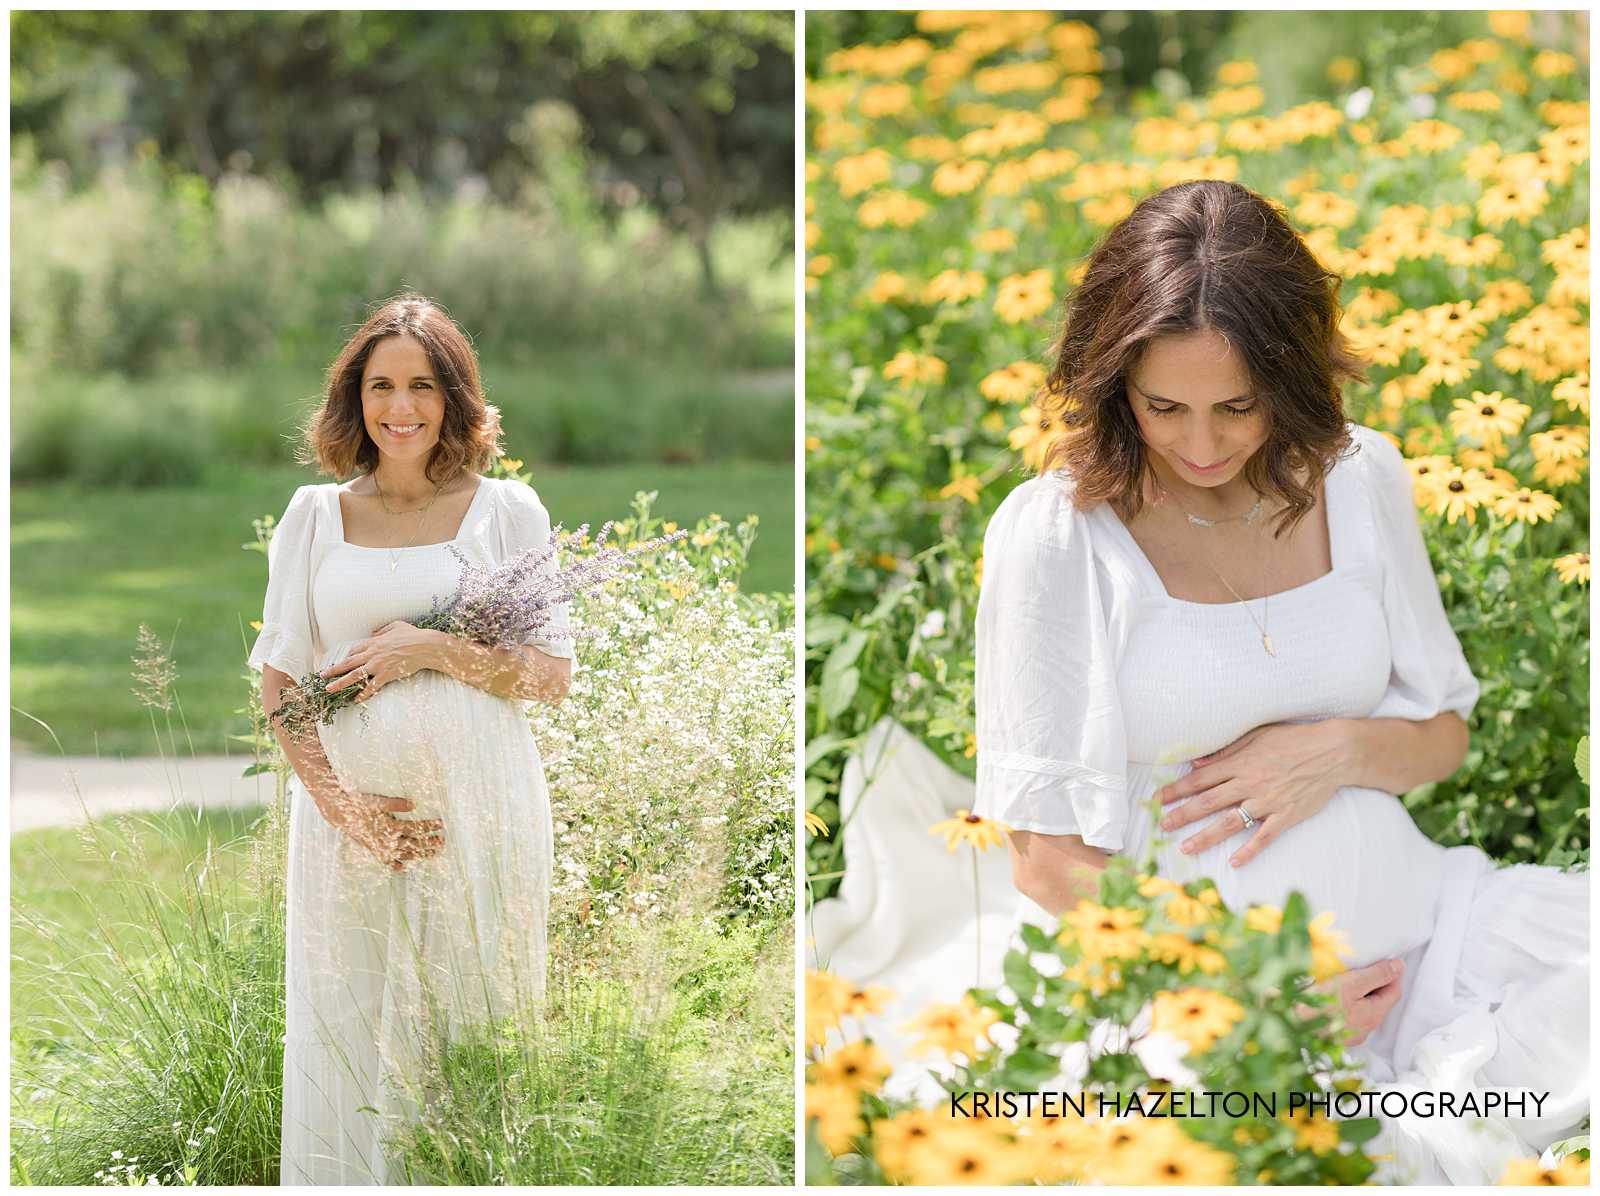 Maternity photos at Lindberg Park by Oak Park, IL photographer Kristen Hazelton